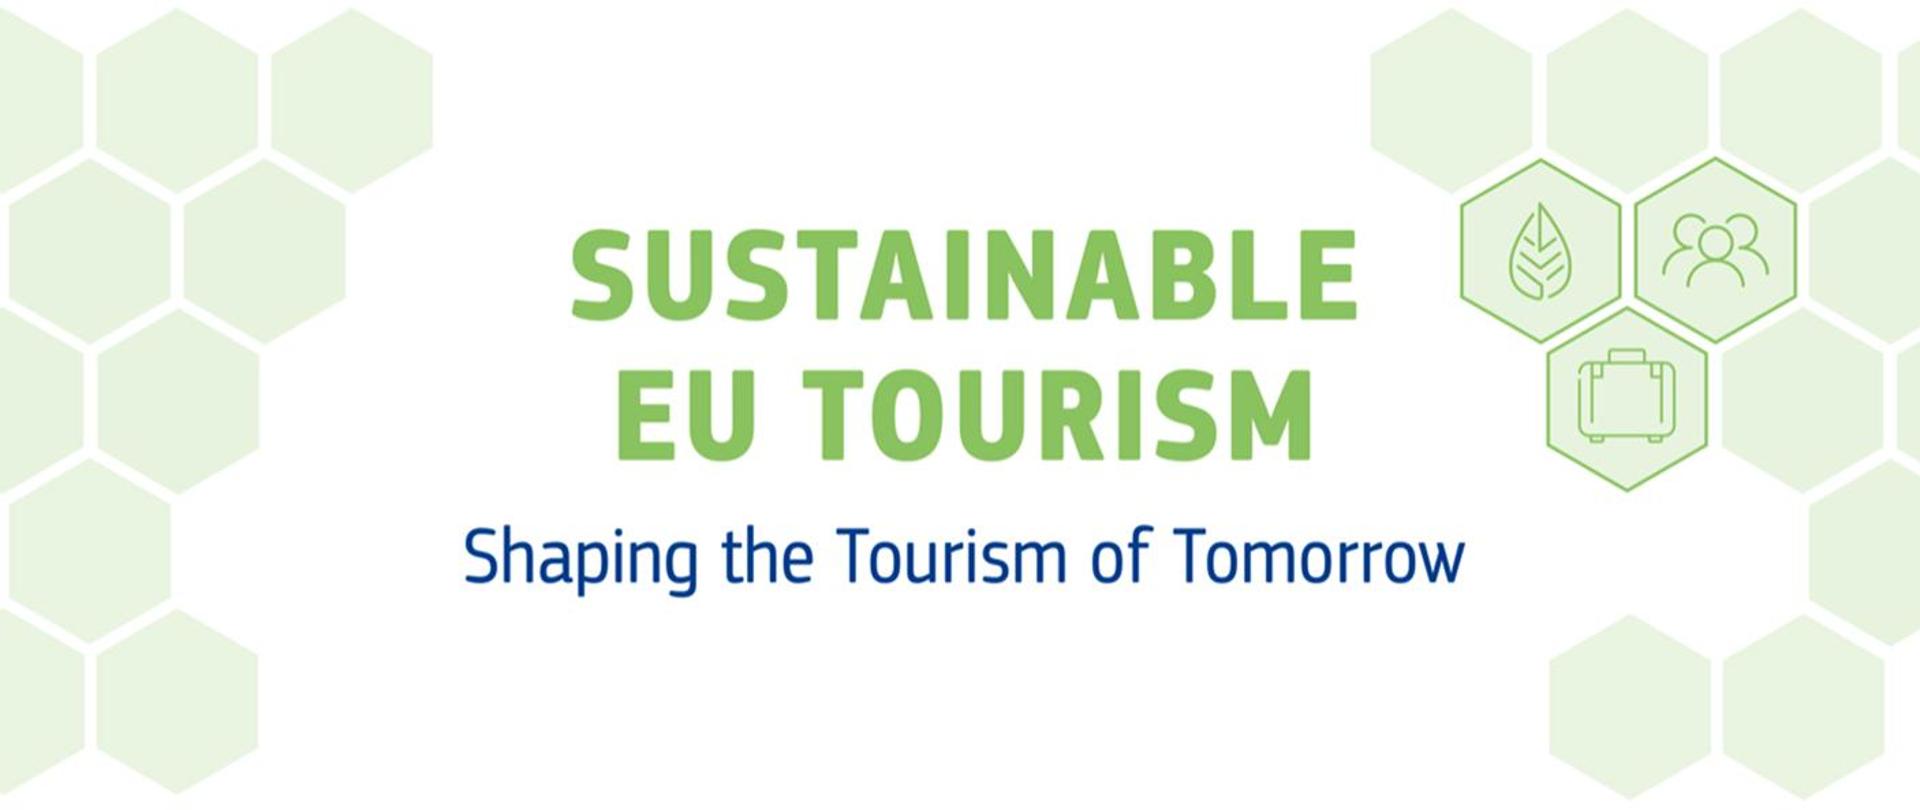 Grafika w kolorach biało zielonych z napisem. Na zielono: SUSTAINABLE EU TOURISM / Na niebiesko: Shaping the Tourism of Tomorrow. Po bokach napisu zielone "plastry miodu". Z prawej strony napisu na trzech plastrach rysunki przedstawiające (1) liść, (2) zarysy postaci, (3) walizkę.